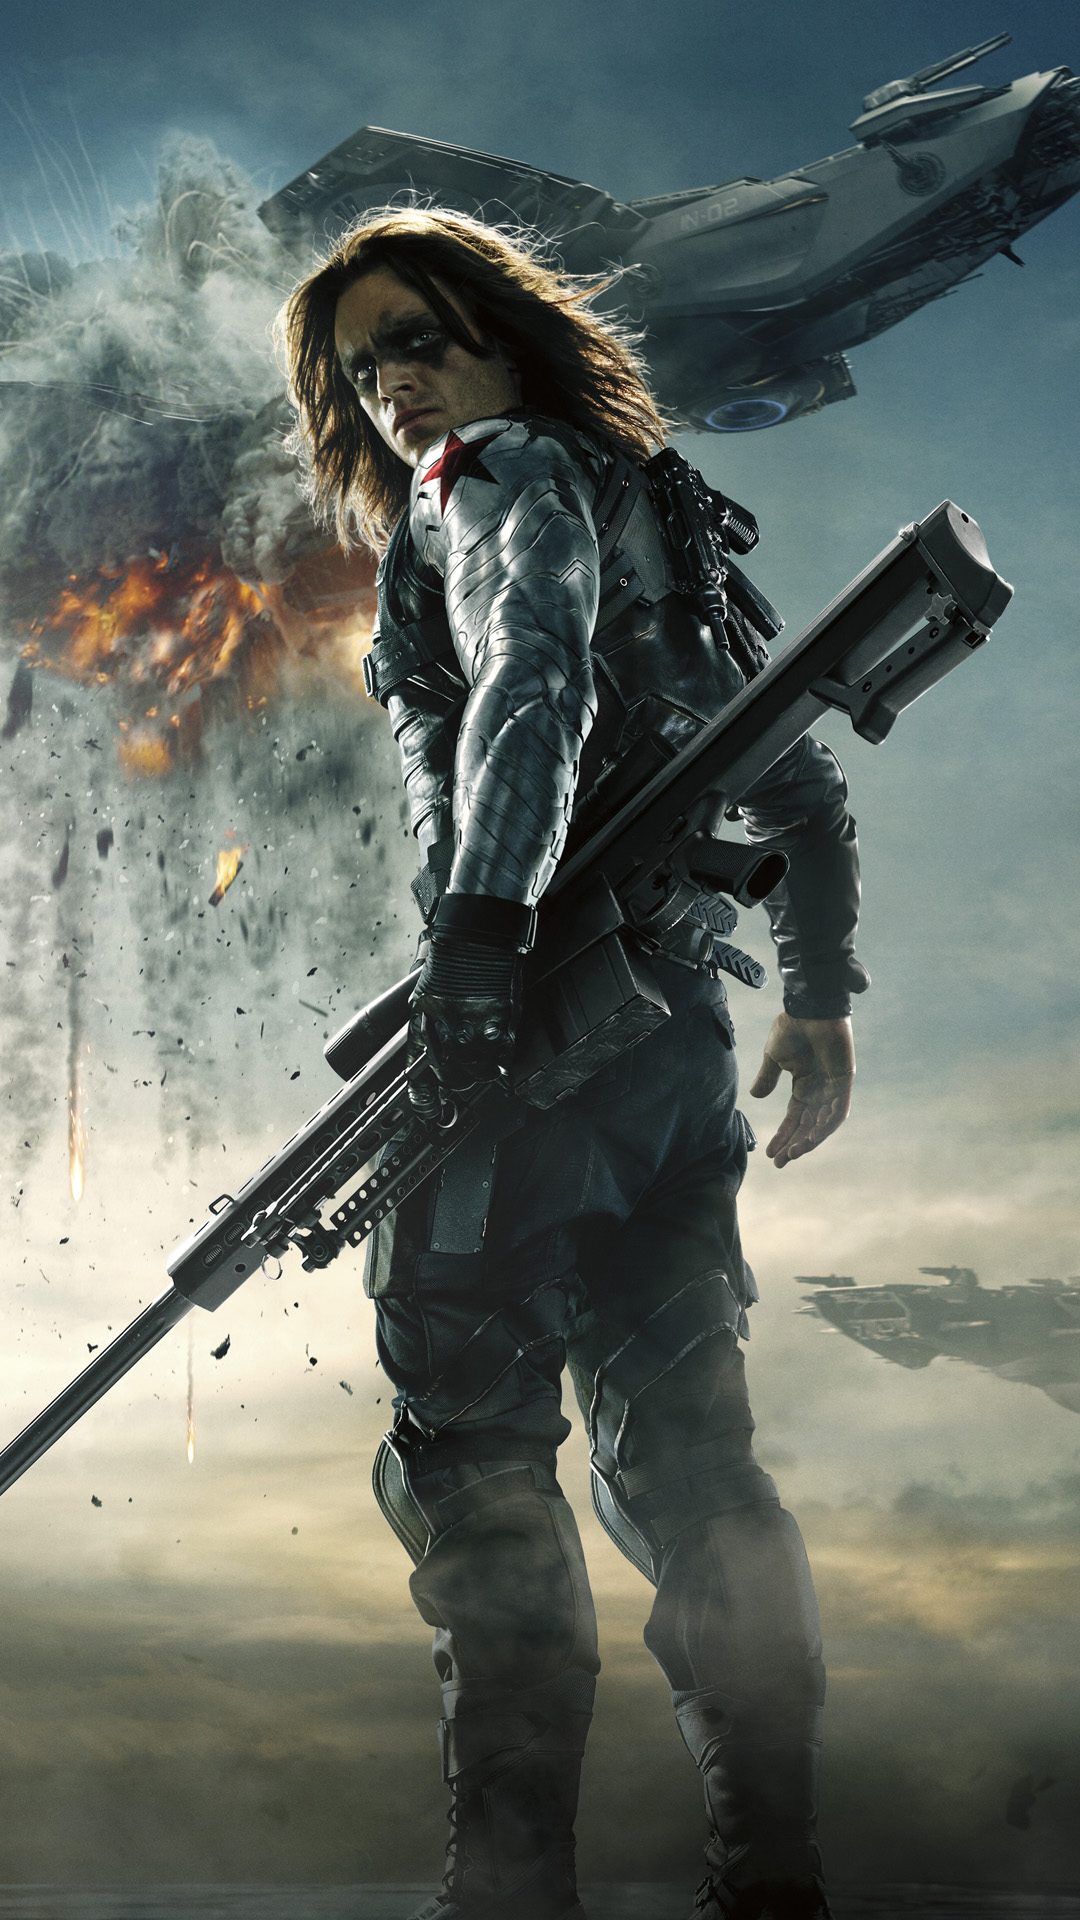 soldado de invierno fondo de pantalla,película,juego de acción y aventura,soldado,película de acción,juego de disparos